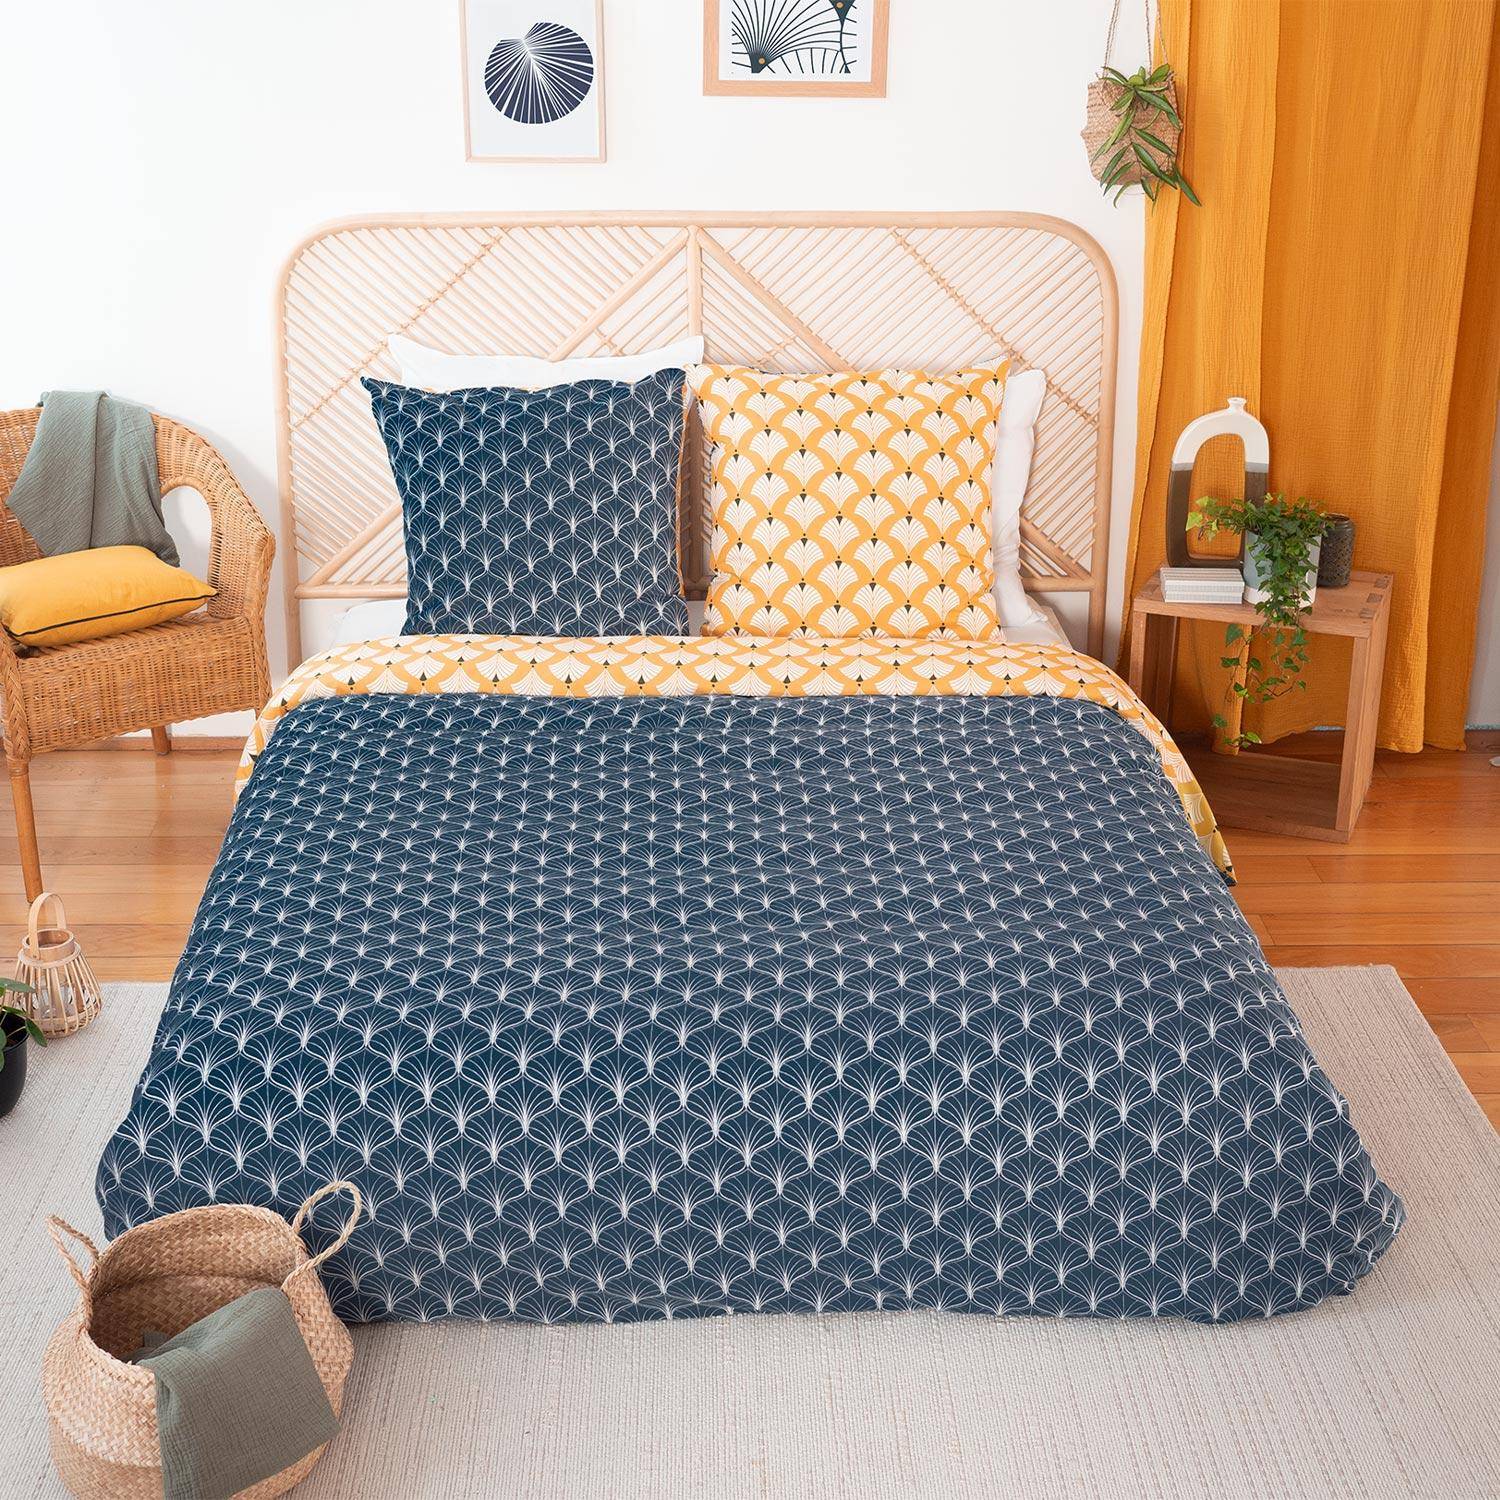 Wendebettwäsche bedruckt mit Lotusblüten - aus Mikrofaser, 1 Bettbezug für ein Doppelbett 240 x 220 cm + 2 Kissenbezüge Photo1